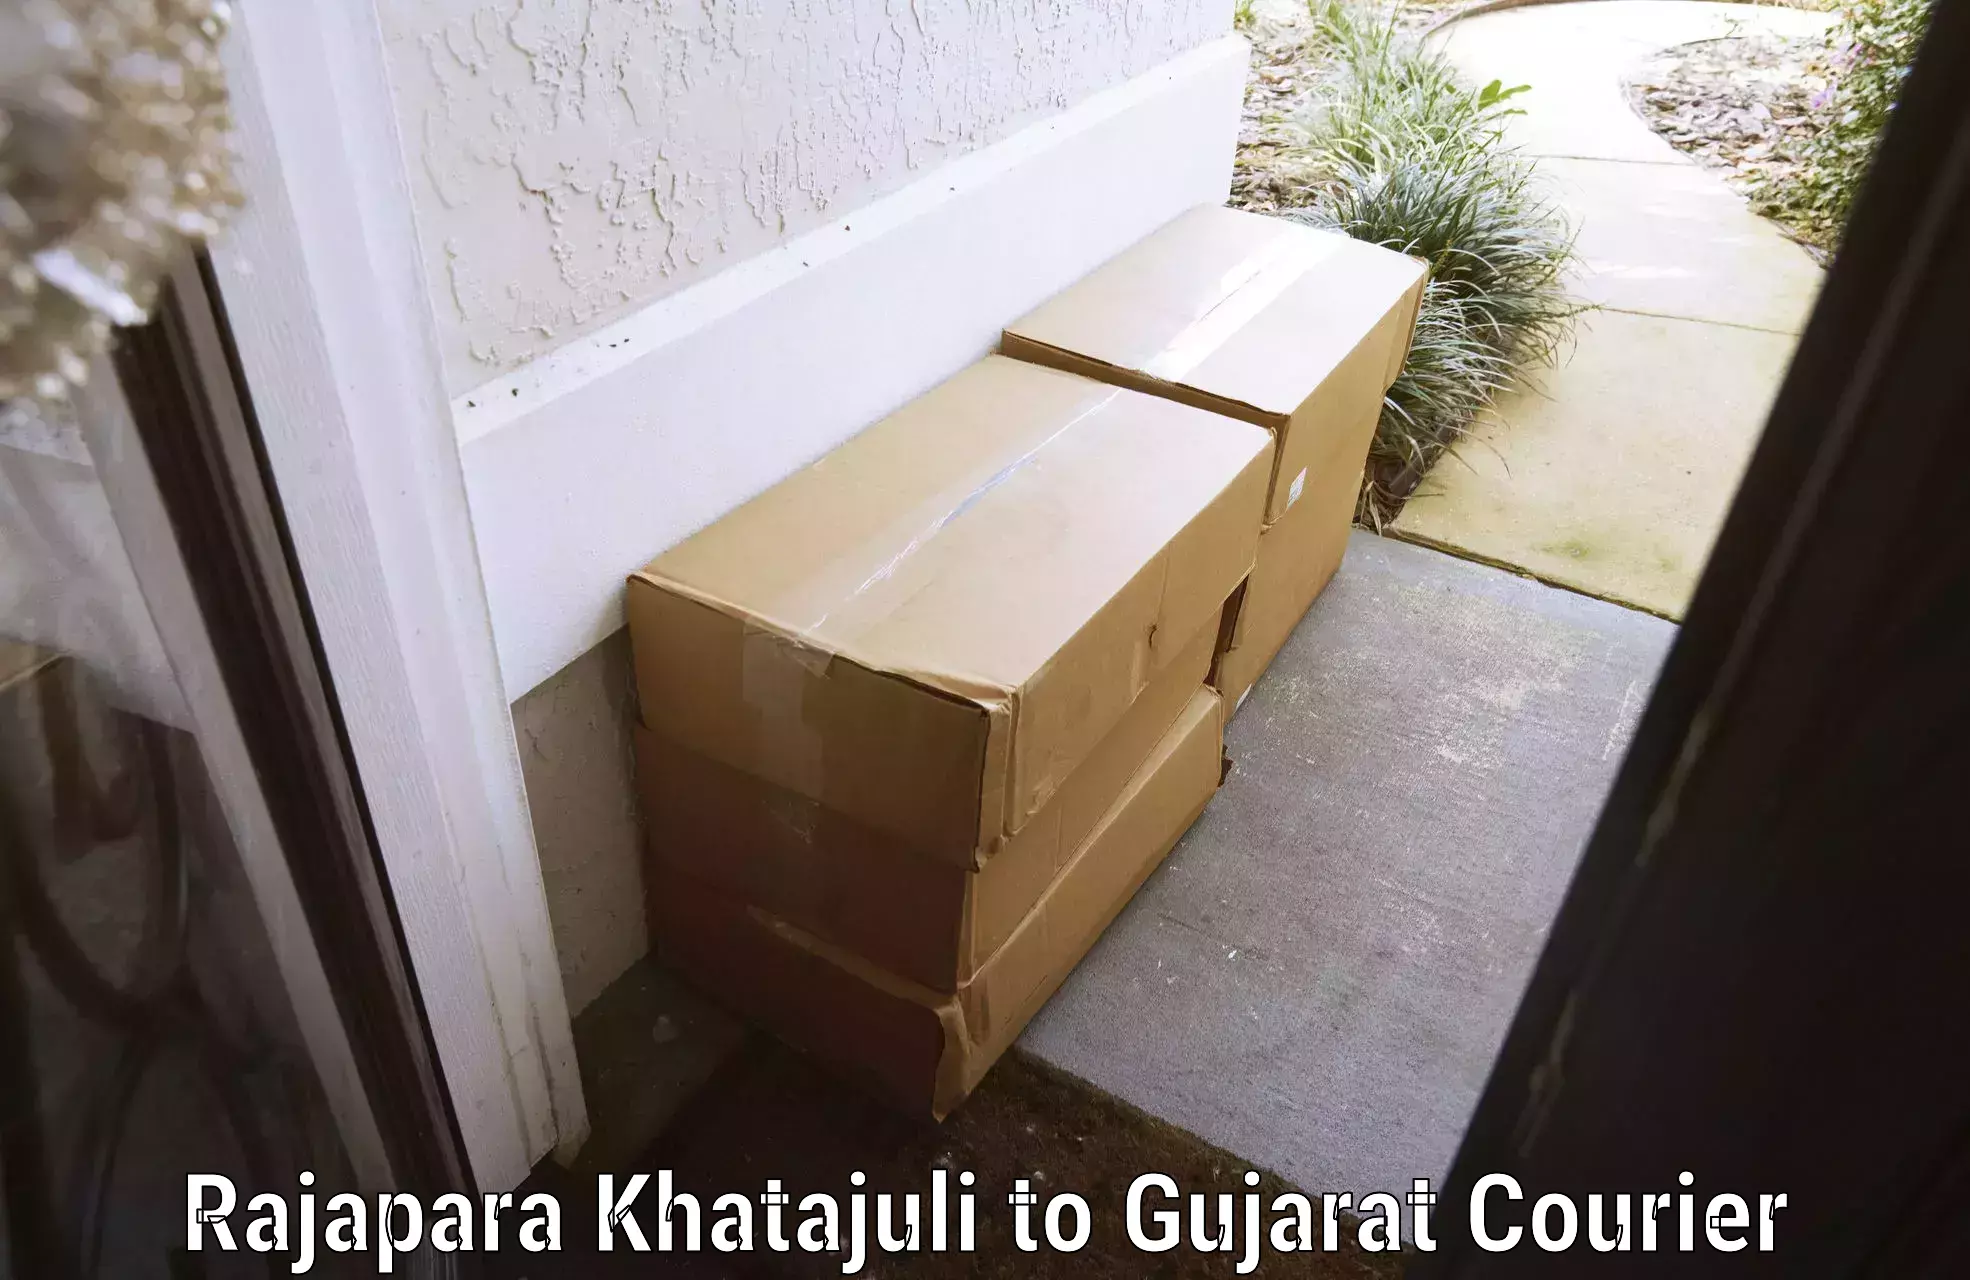 Luggage delivery operations Rajapara Khatajuli to Talala